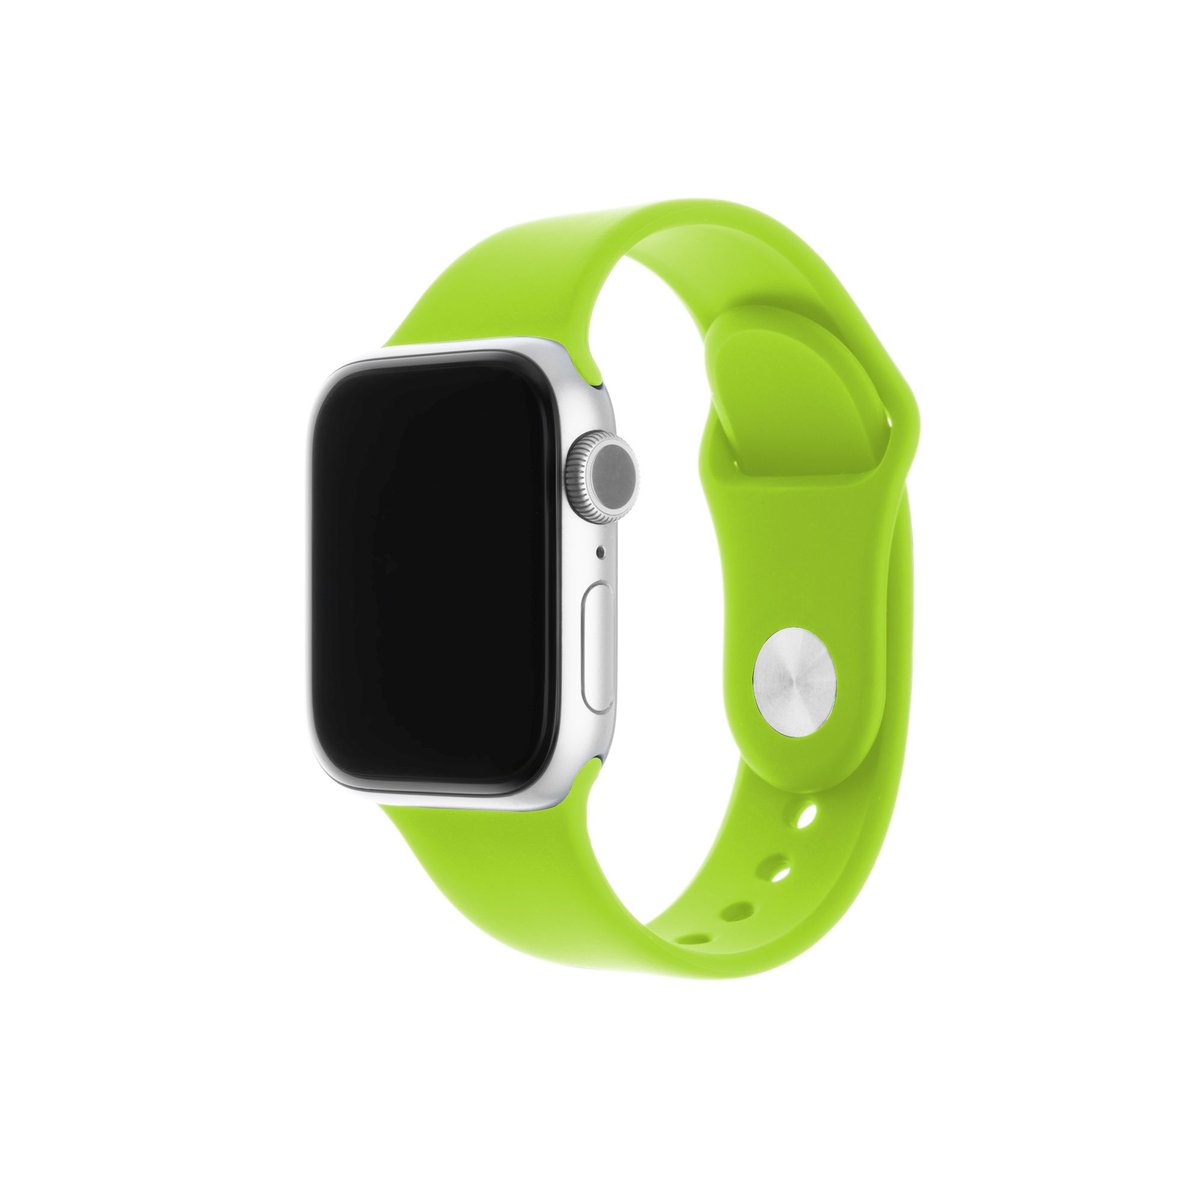 FIXED Silicone Strap Set do Apple Watch green - darmowy odbiór w 22 miastach i bezpłatny zwrot Paczkomatem aż do 15 dni